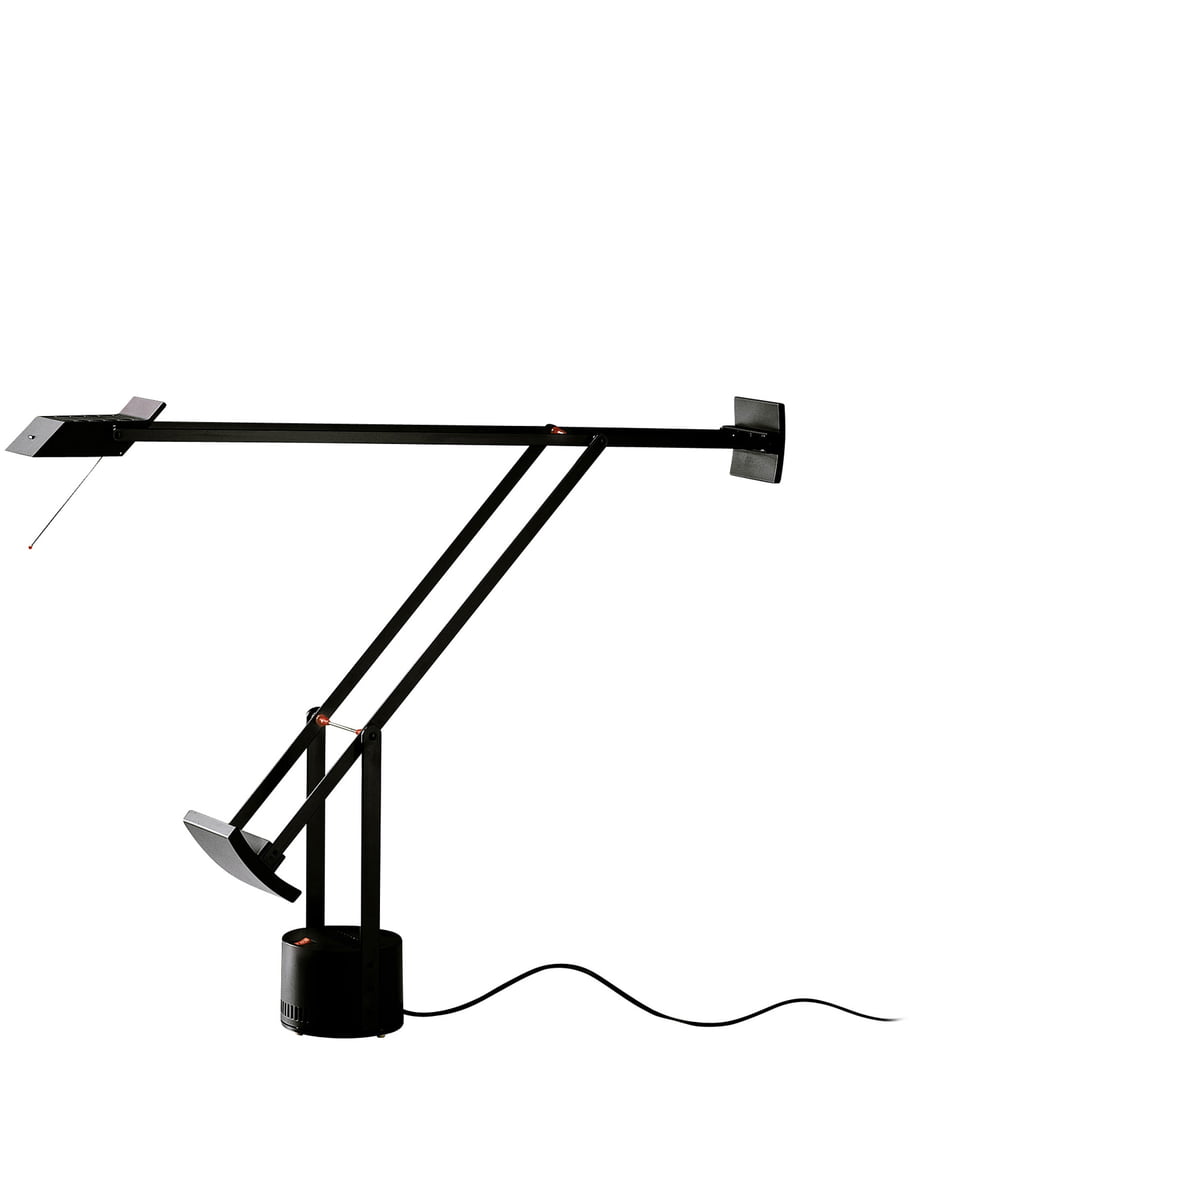 TIZIO MICRO table lamp